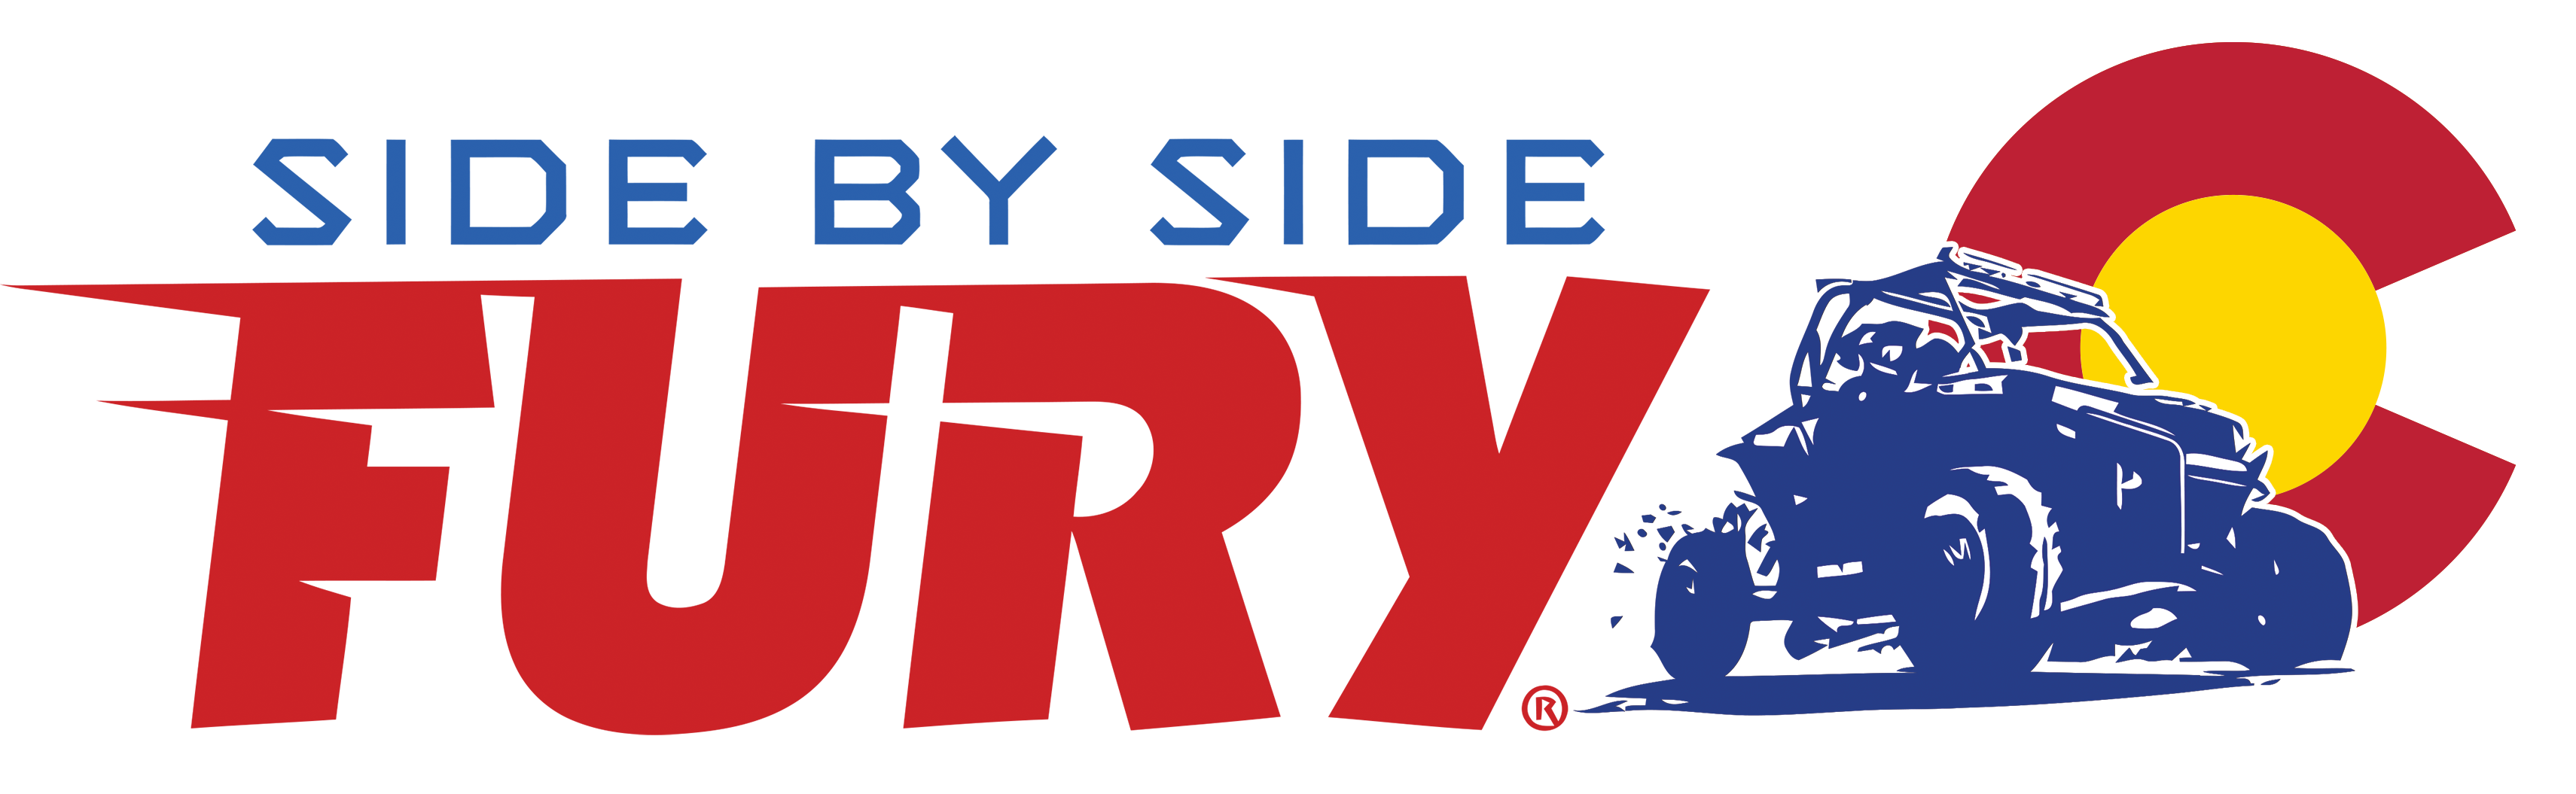 Side by Side Fury